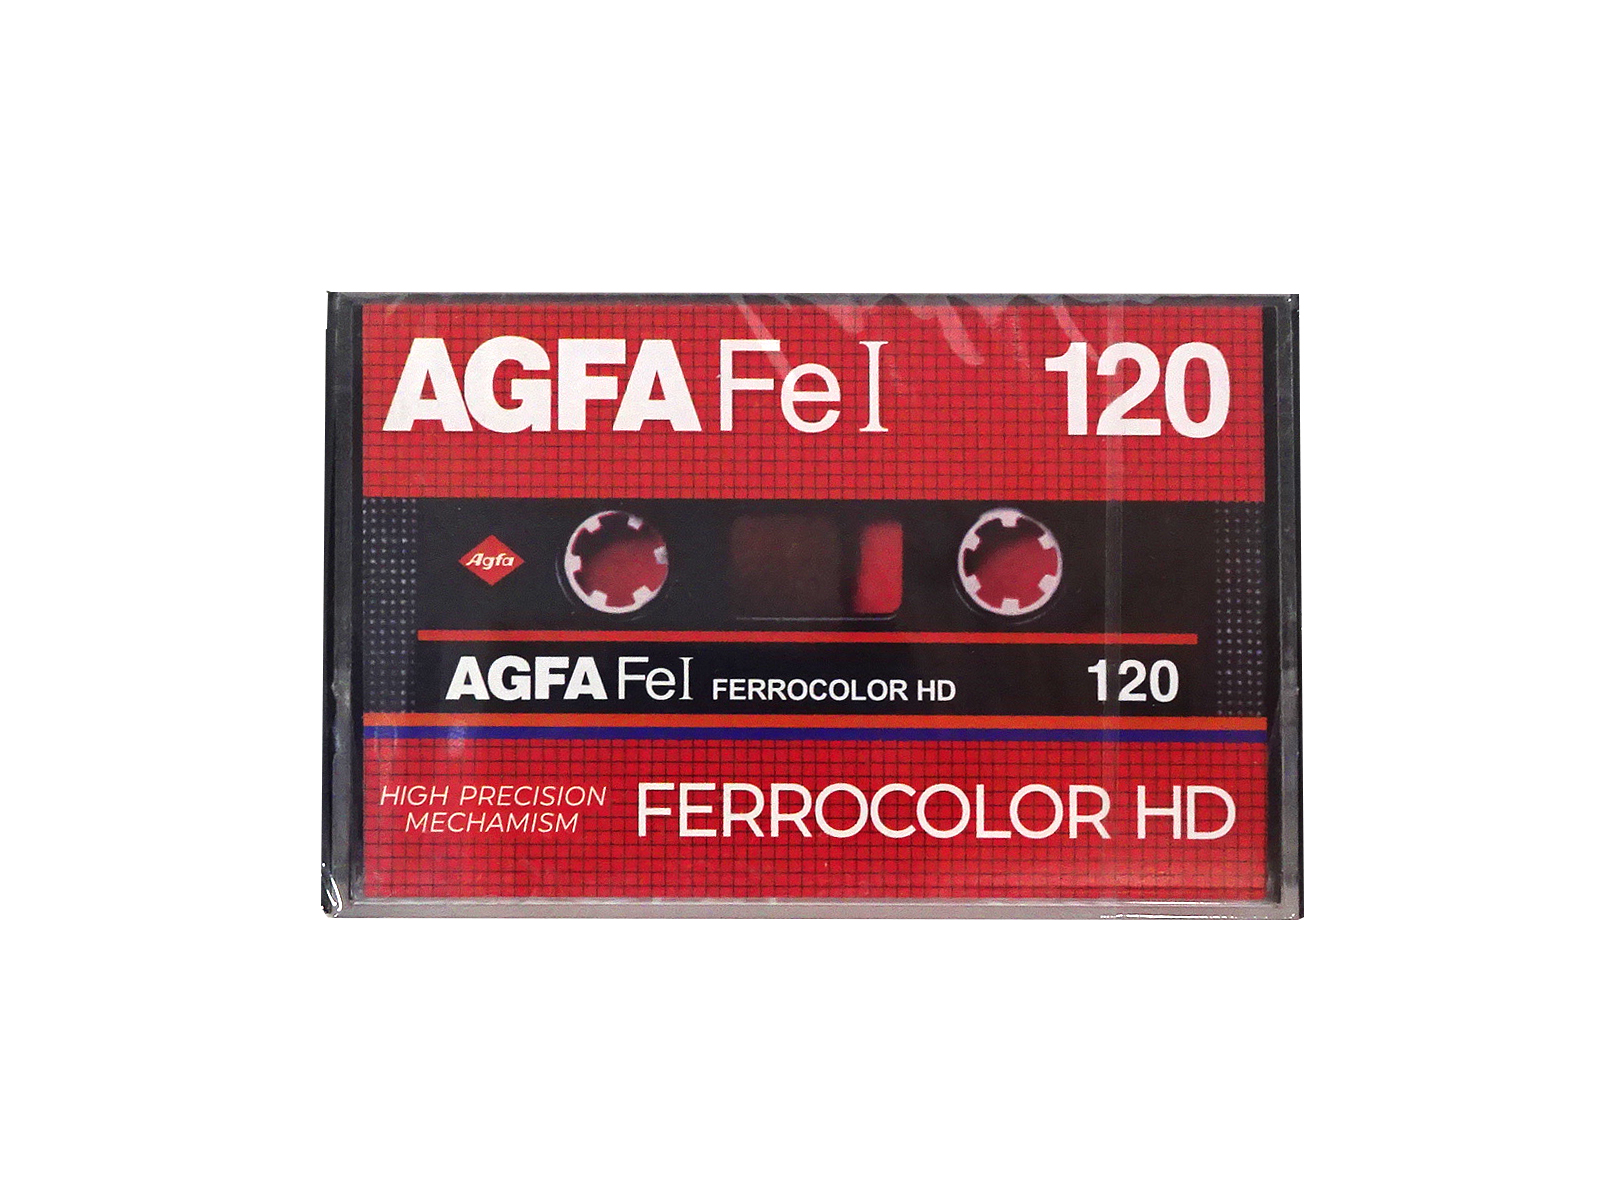 Аудиокассета AGFA FeI 120 FERROCOLOR HD